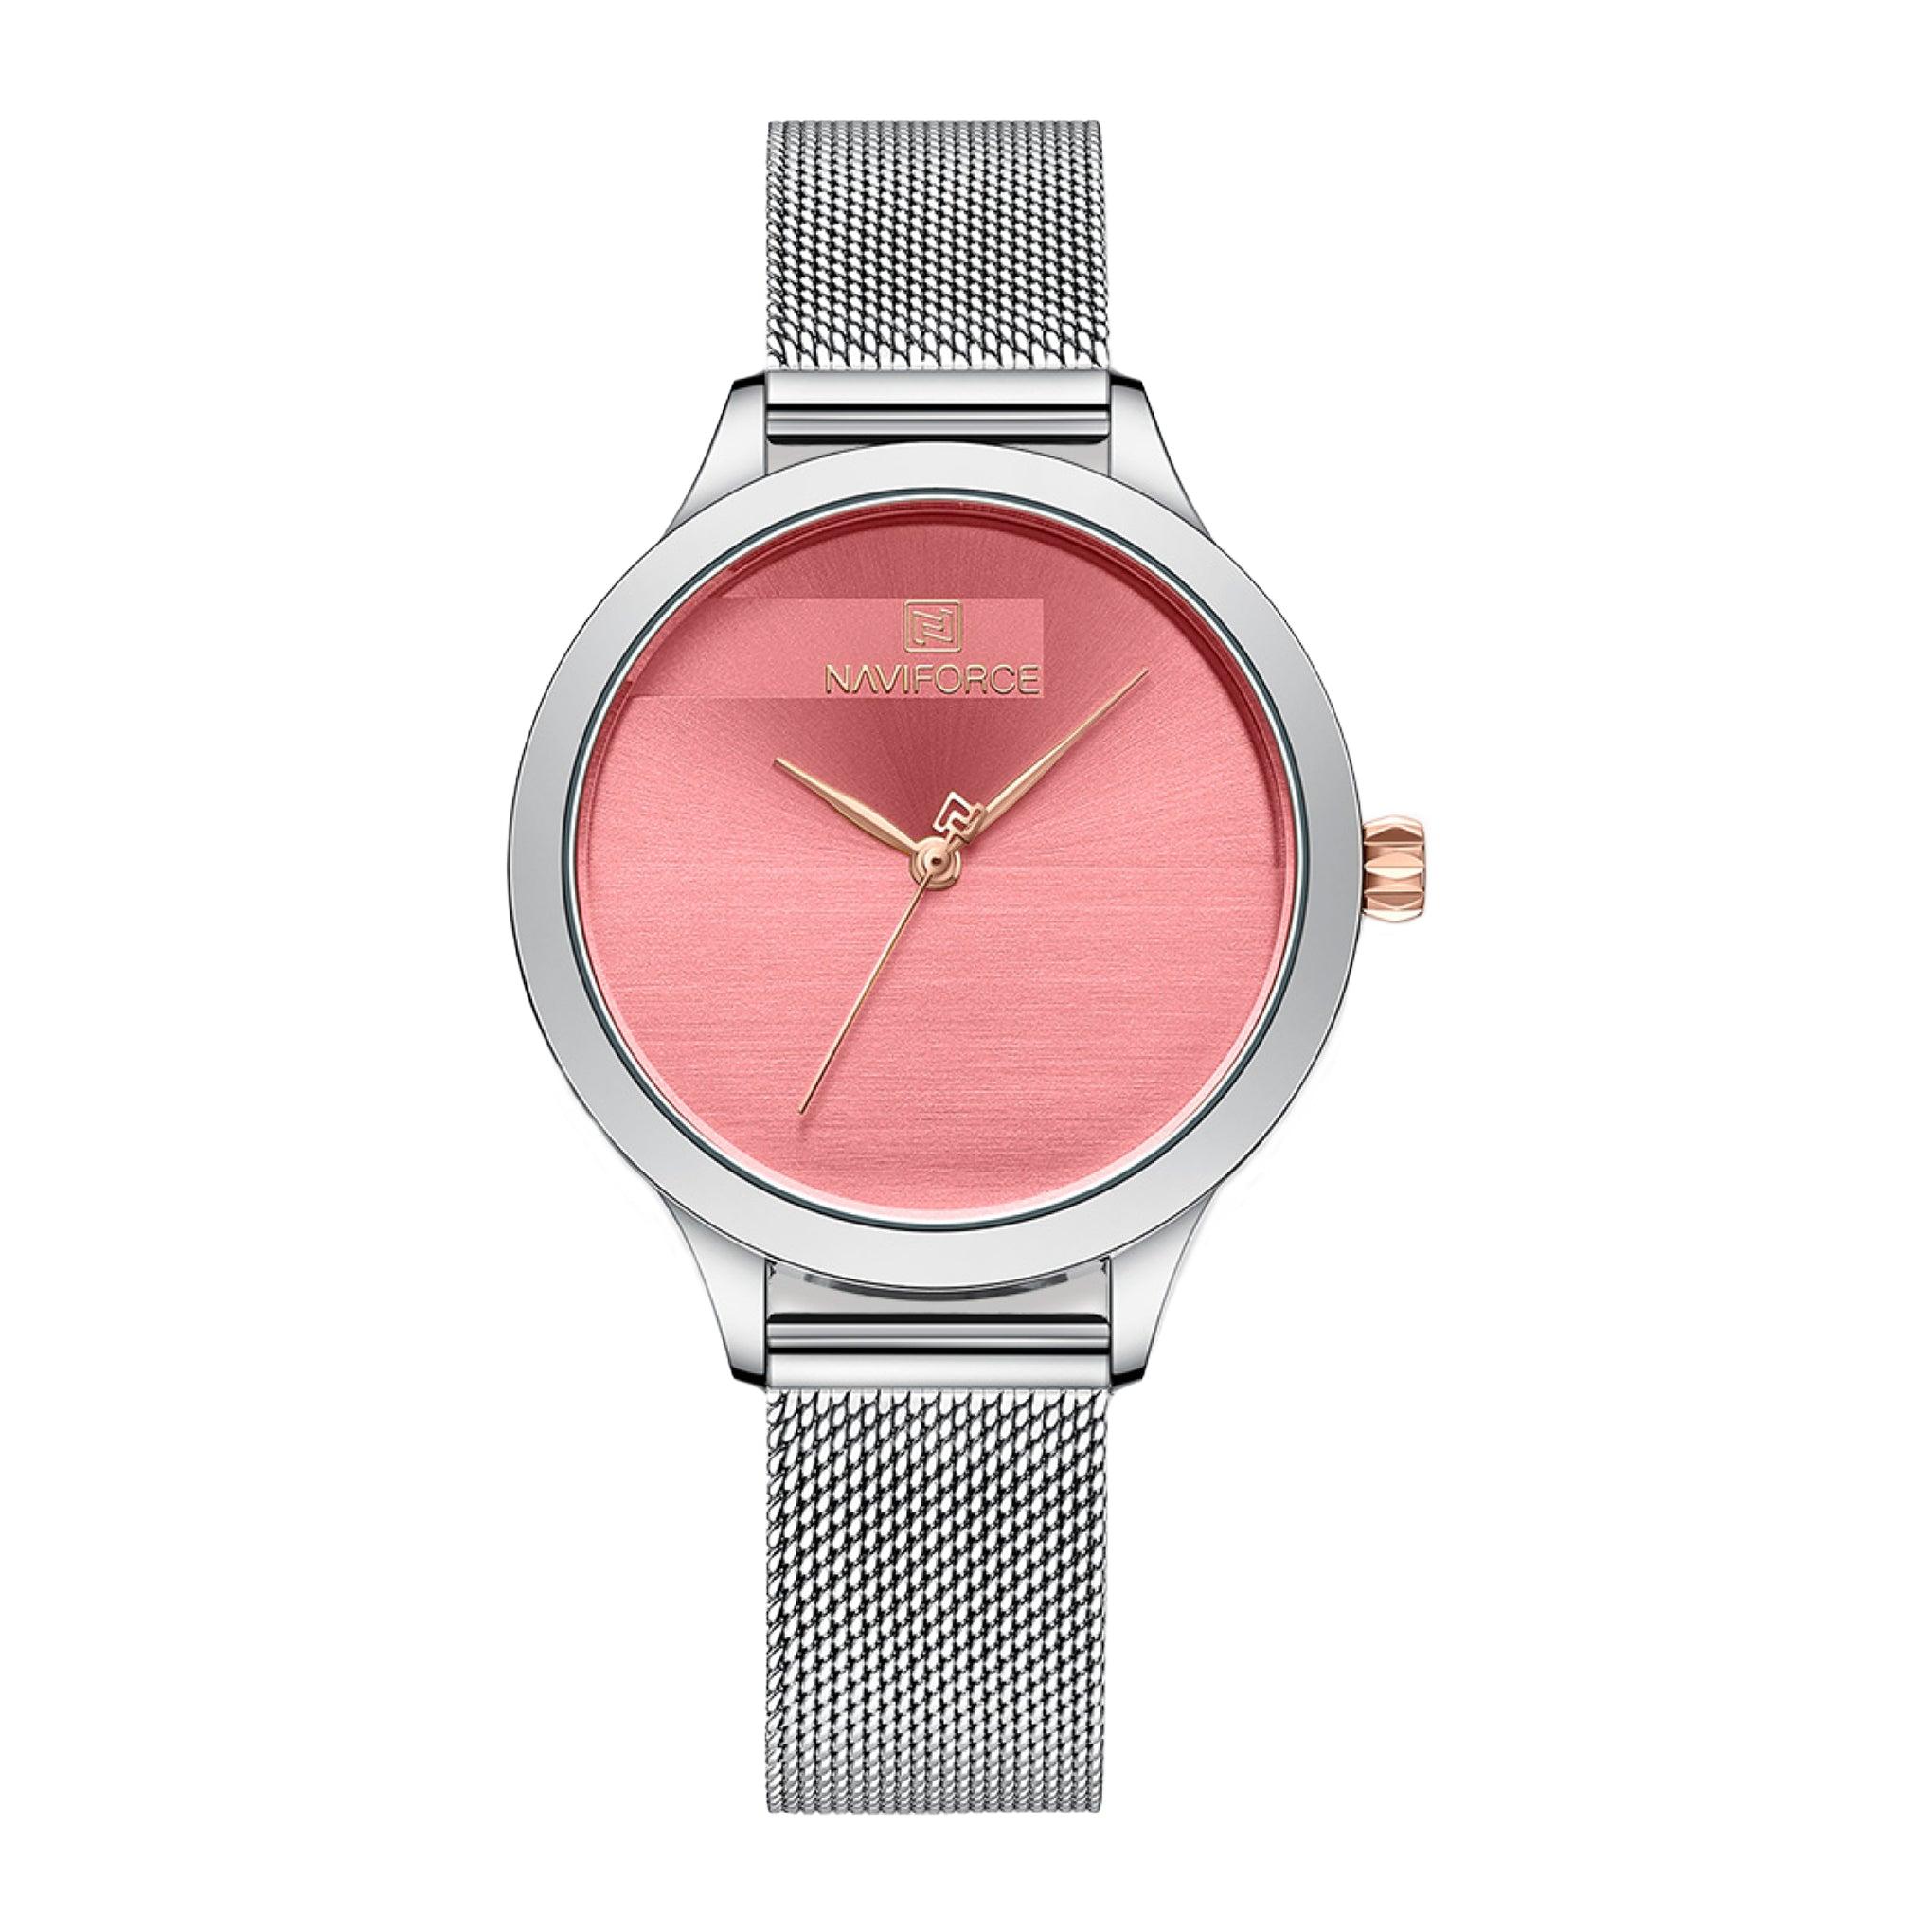 ساعة نسائية ستانلس ستيل نافيفورس Naviforce Women's Quartz Luxury Stainless Steel Band Pink Dial Watches Nf5027